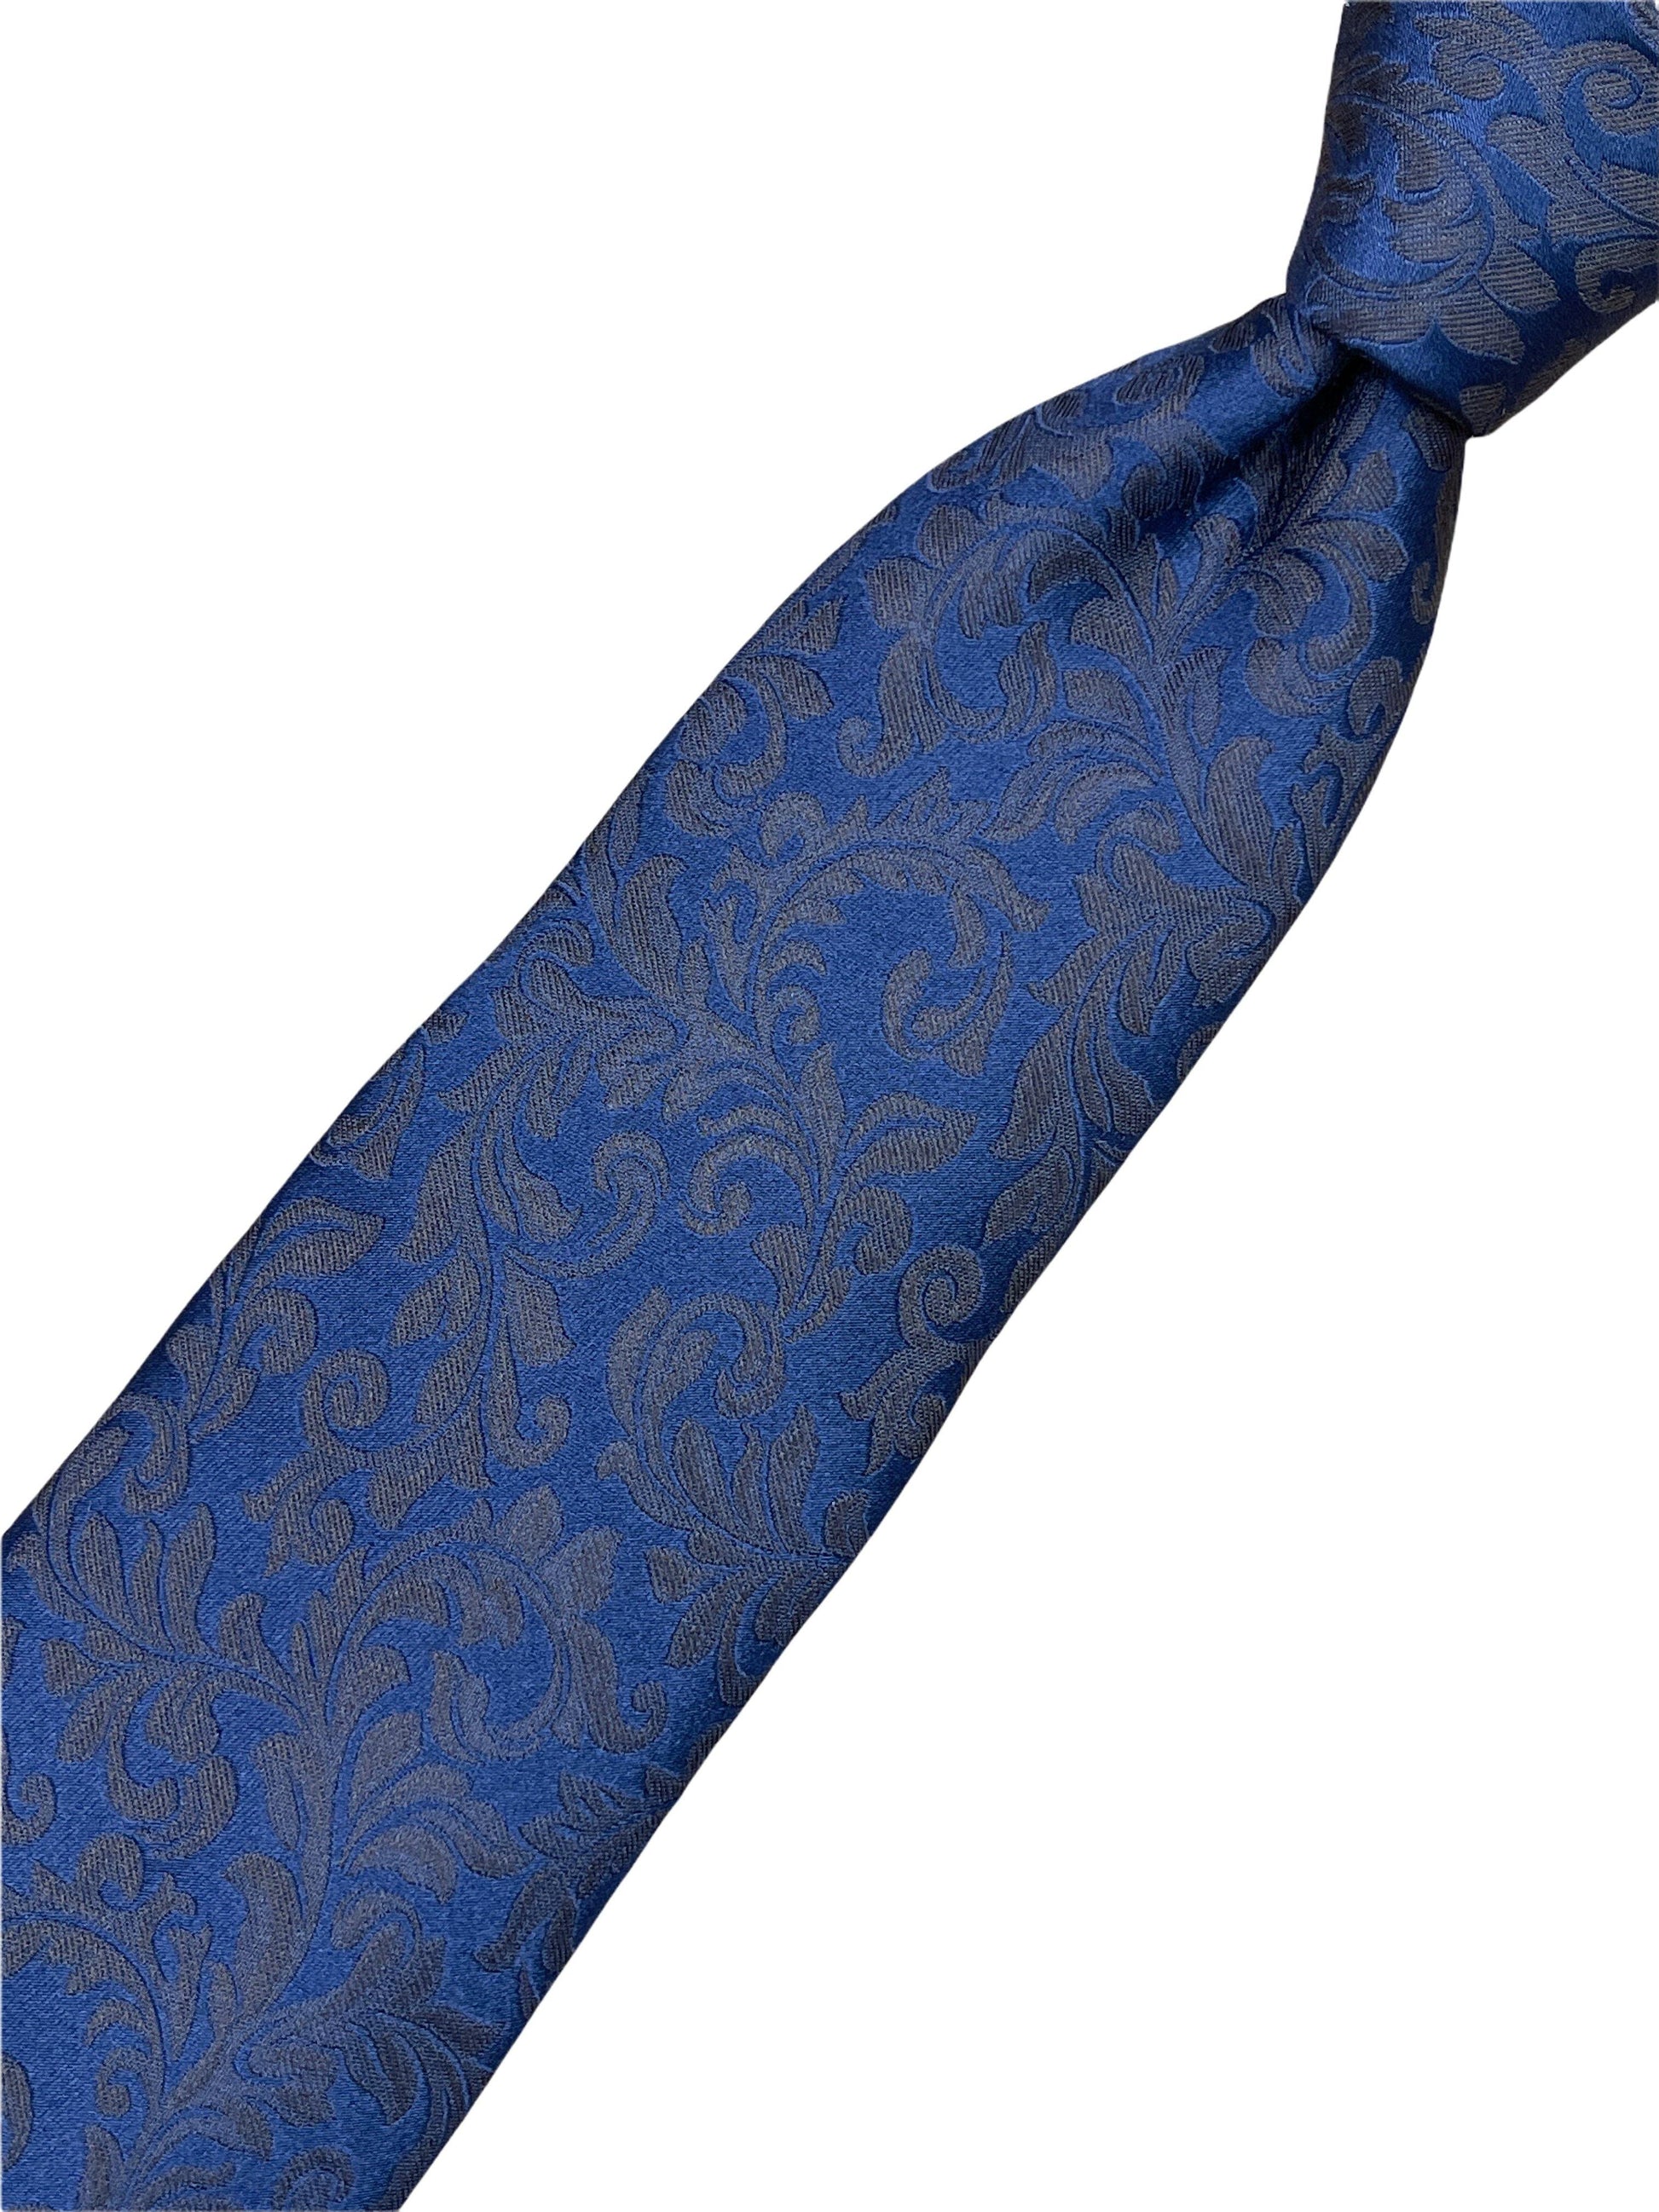 Eremengildo zegna blue tonal paisley silk tie